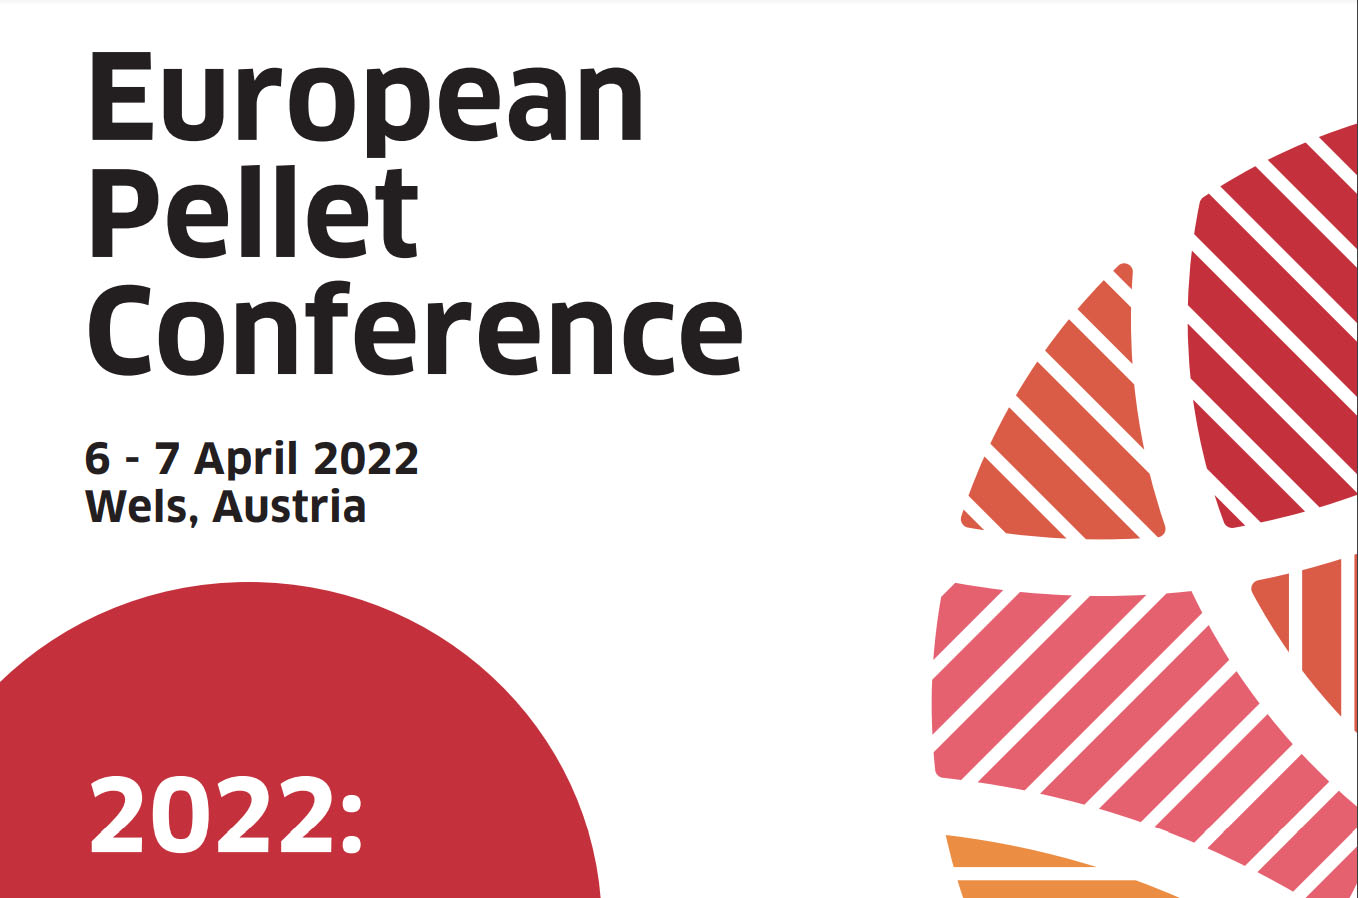 European Pellet Conference 2022, Wels